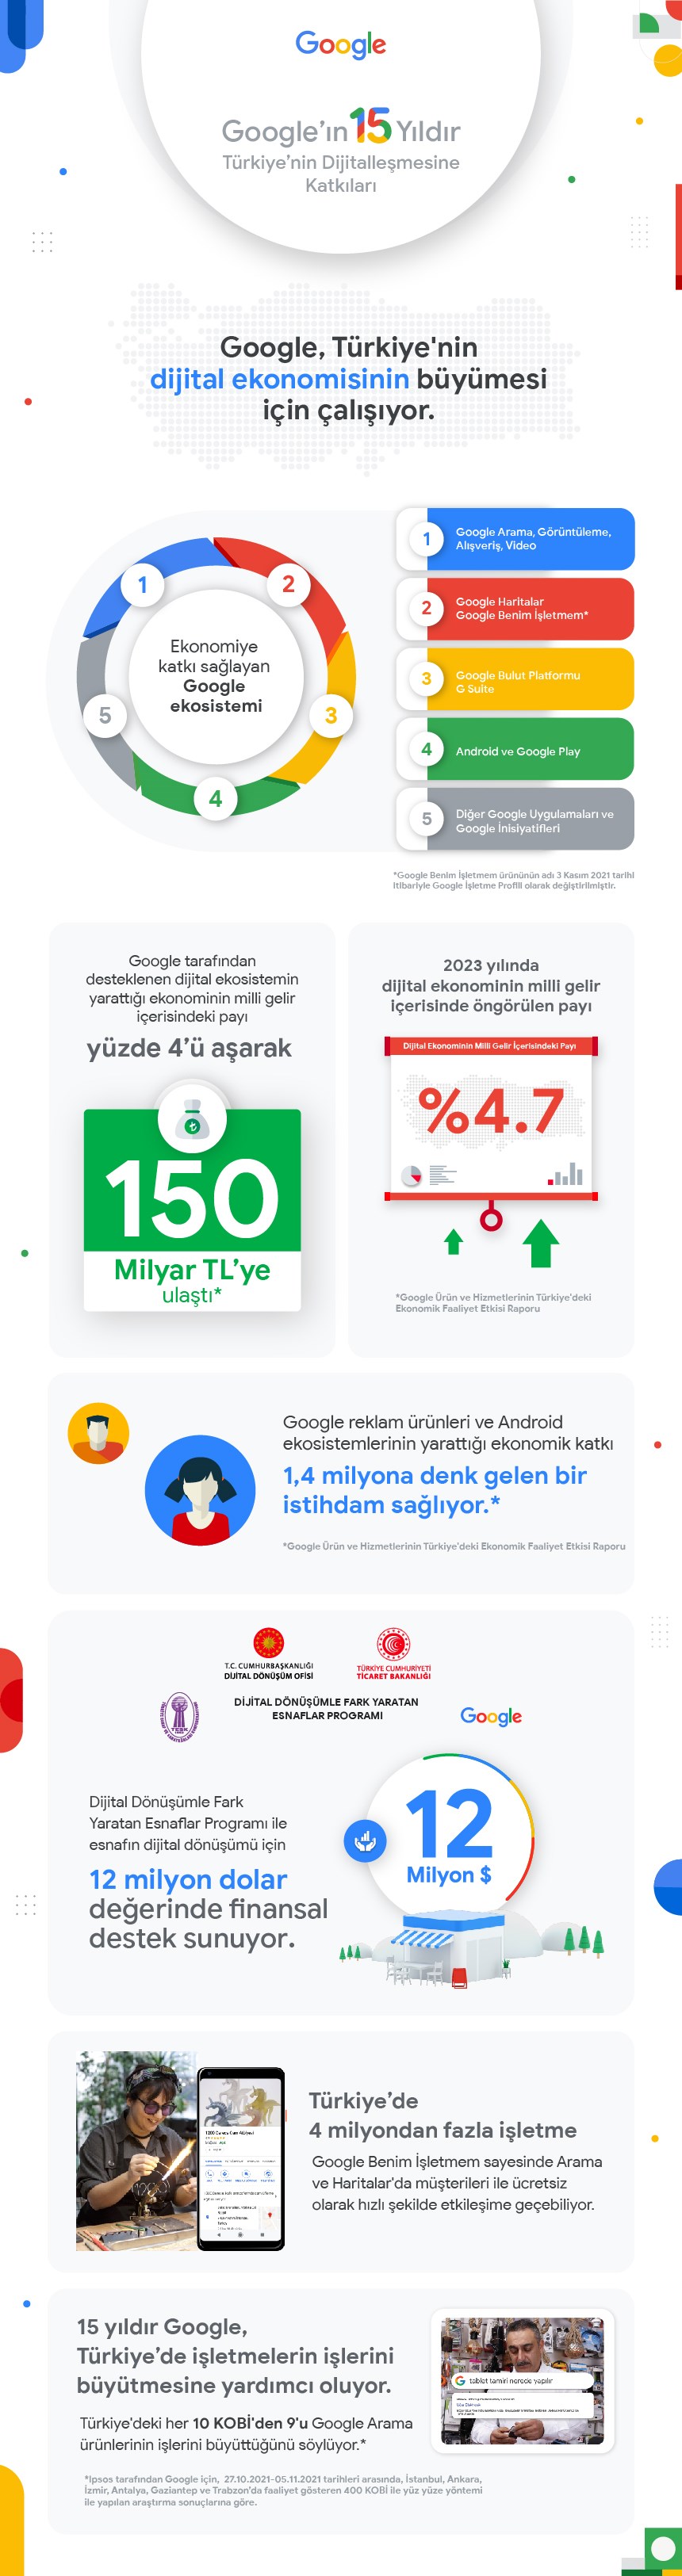 Google, Türkiye'deki 15. yılını kutluyor